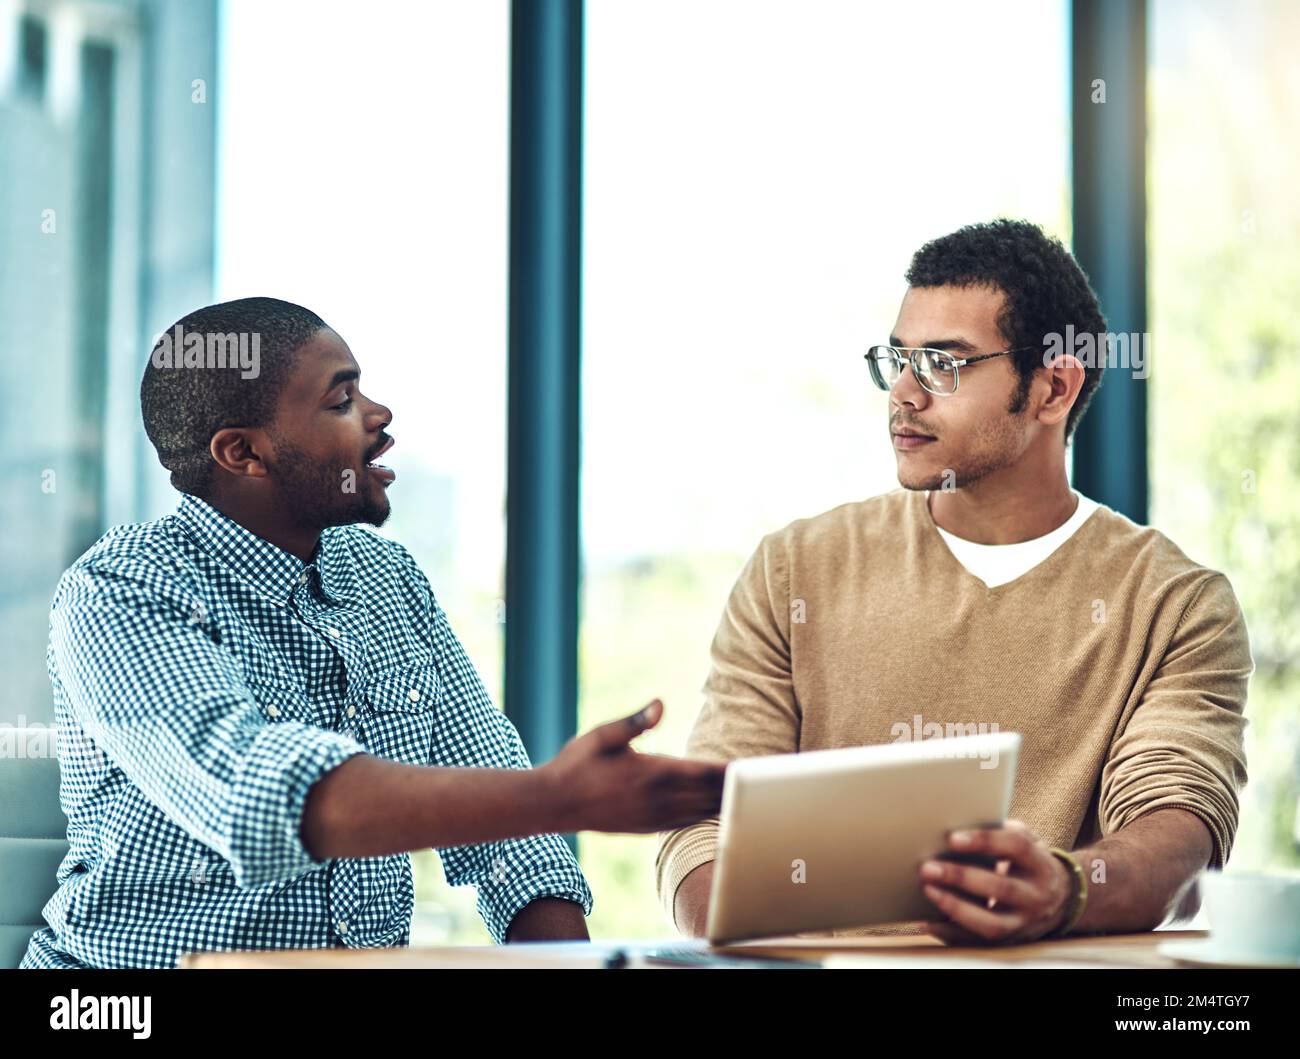 Vous pouvez désormais trouver des solutions pour vous aider dans tous les aspects de votre entreprise. deux jeunes concepteurs discutent de quelque chose sur une tablette numérique. Banque D'Images